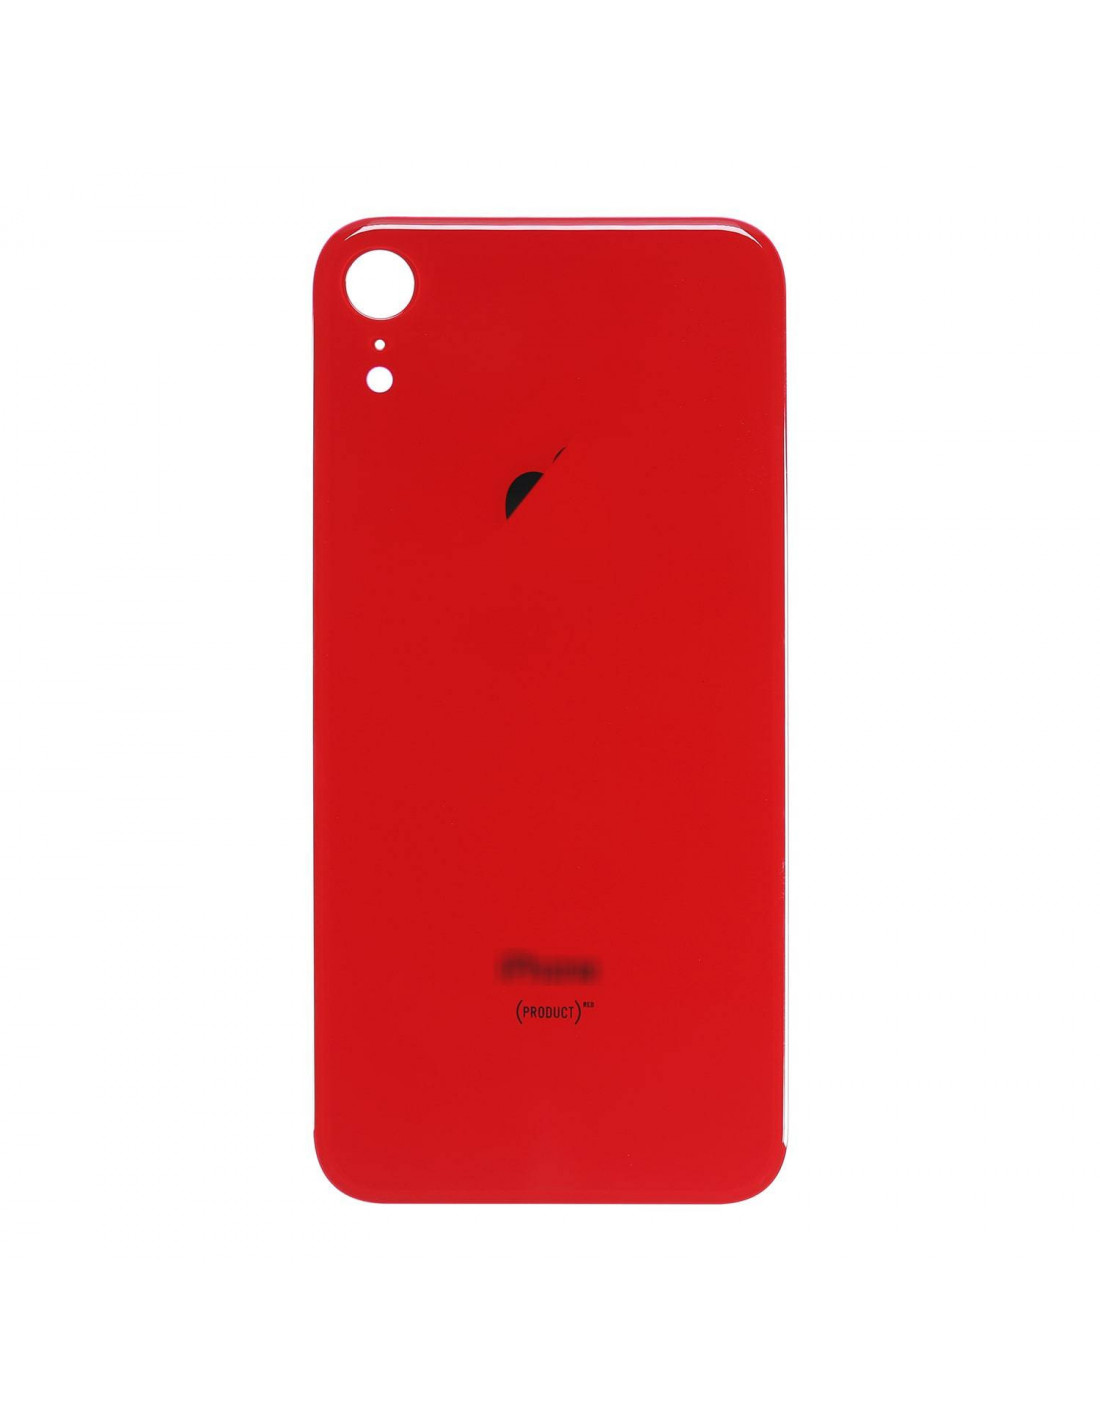 Carcasa Central con Tapa Trasera para Iphone SE 2020 - Roja